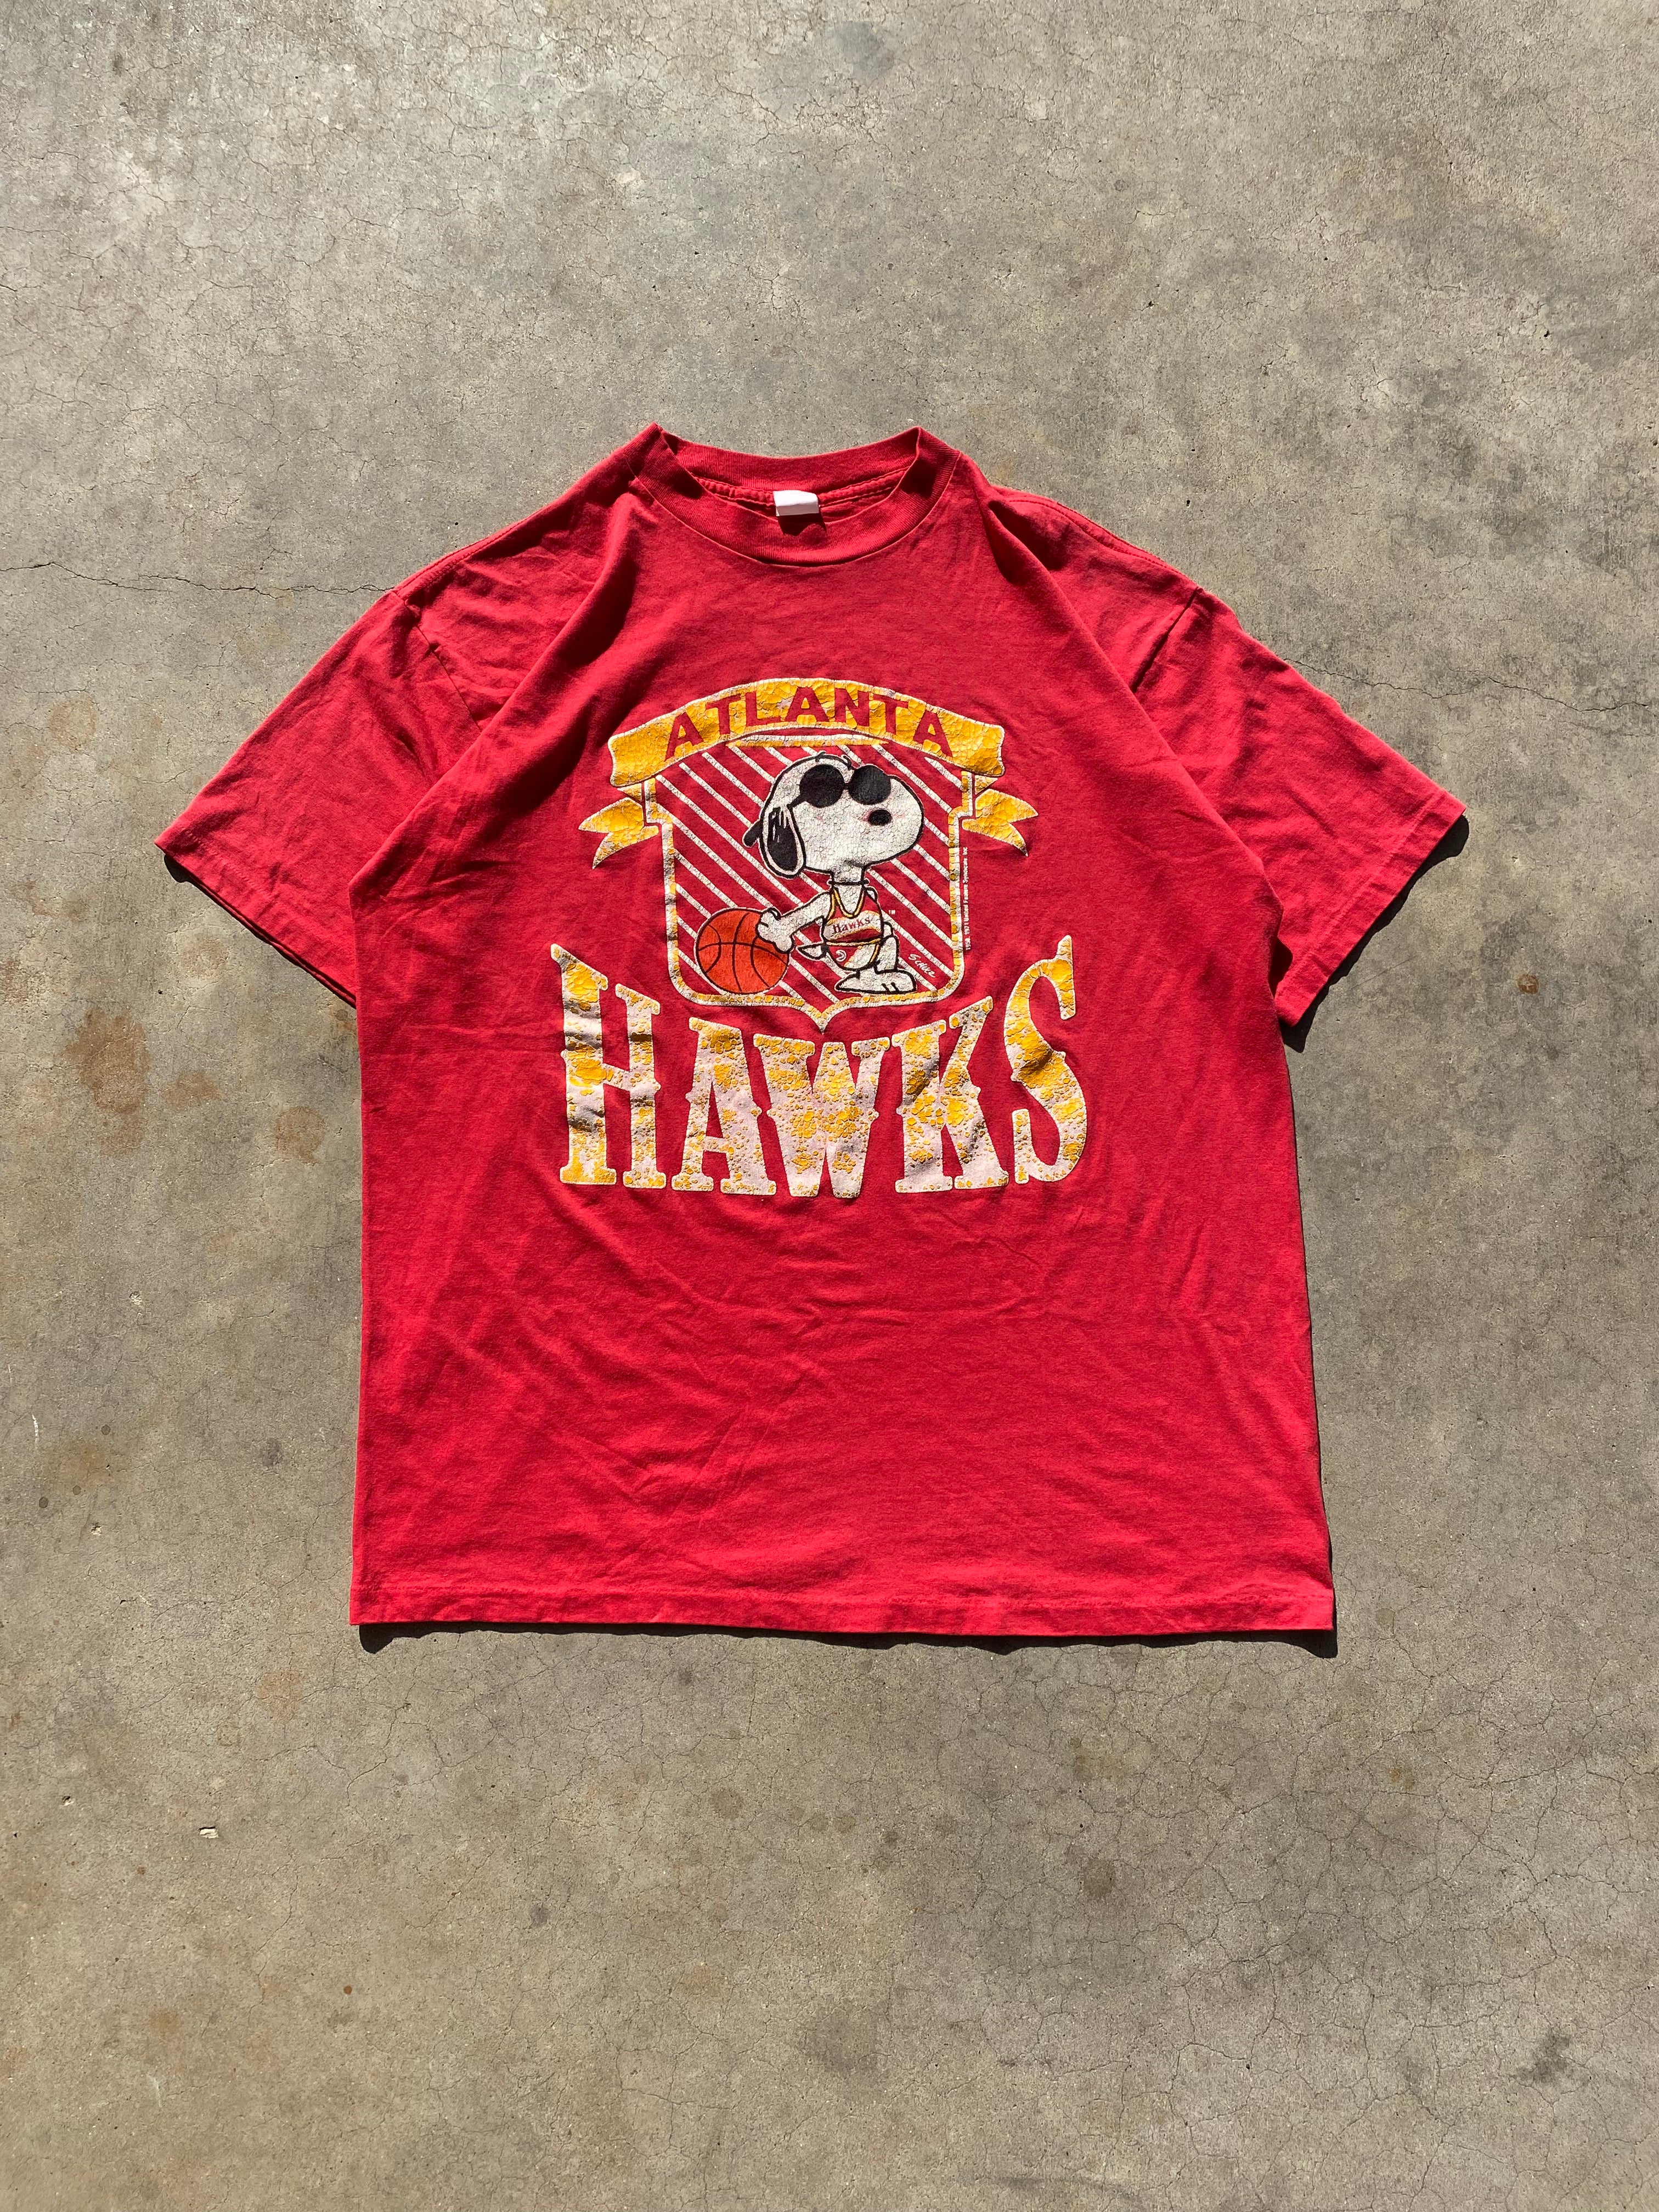 1980s Atlanta Hawks Snoopy T-Shirt (L)